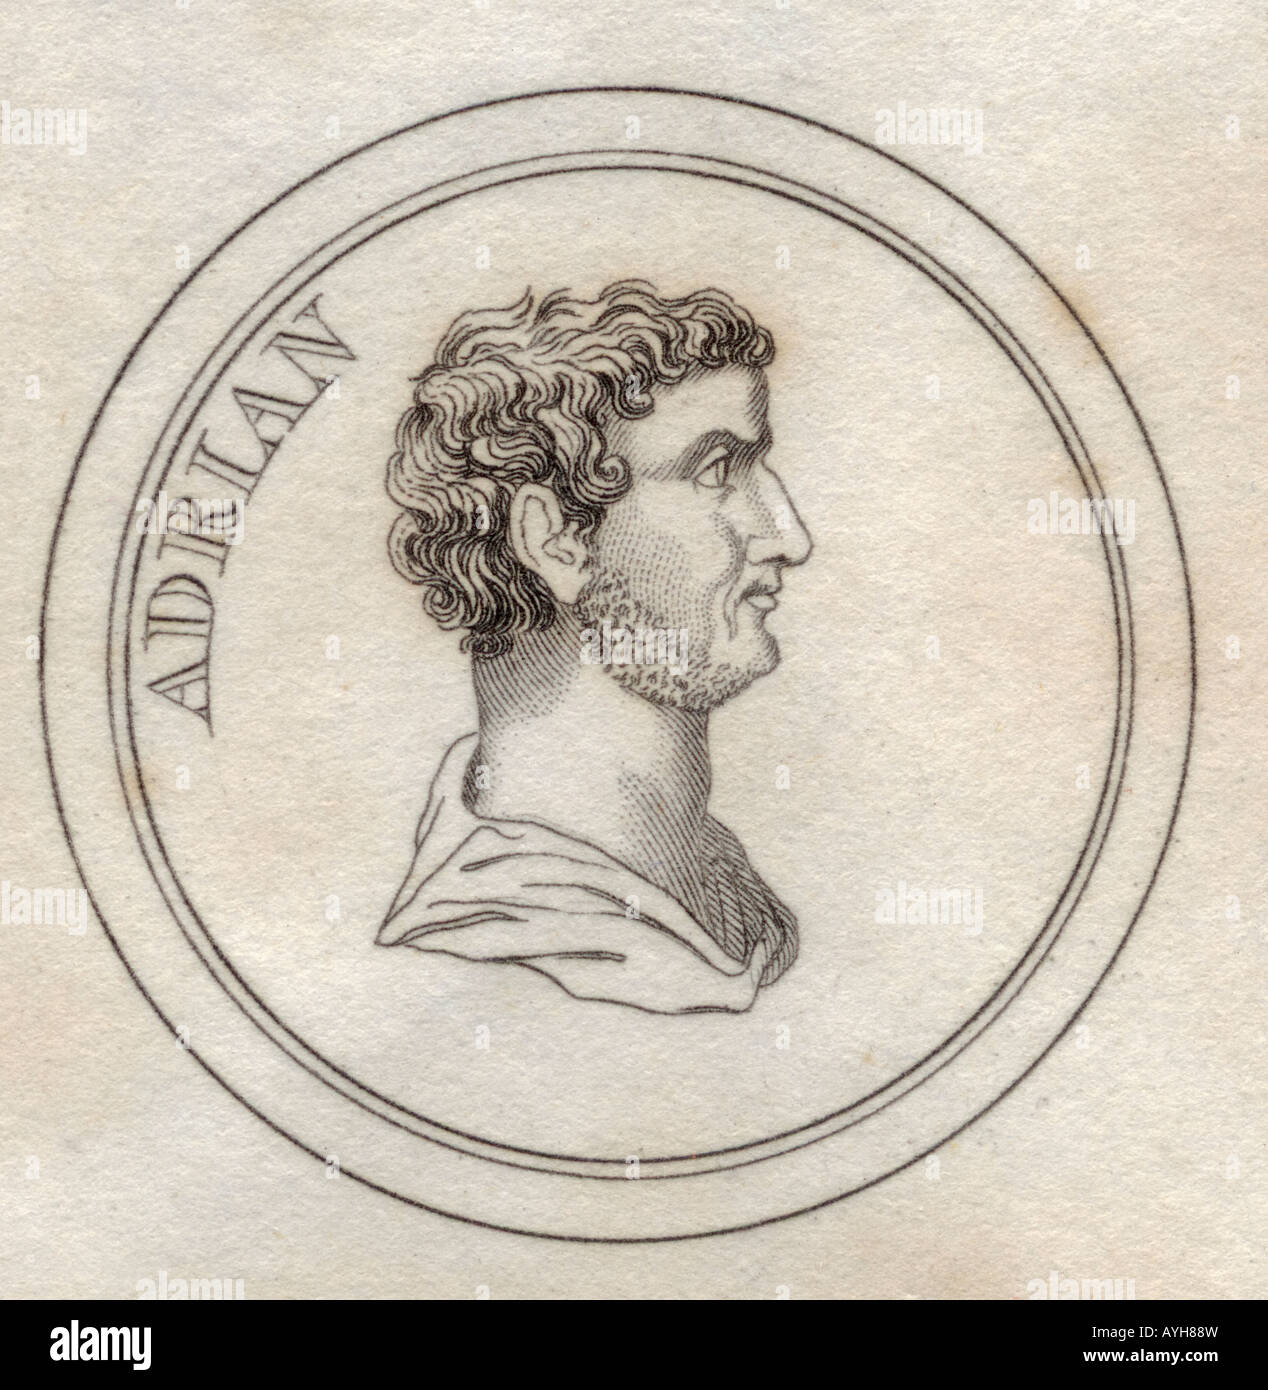 Publio Aelius Traianus Hadrianus, BC76 - BC138. Imperatore romano conosciuto anche come Adriano. Filosofo stoico ed epicureo. Foto Stock